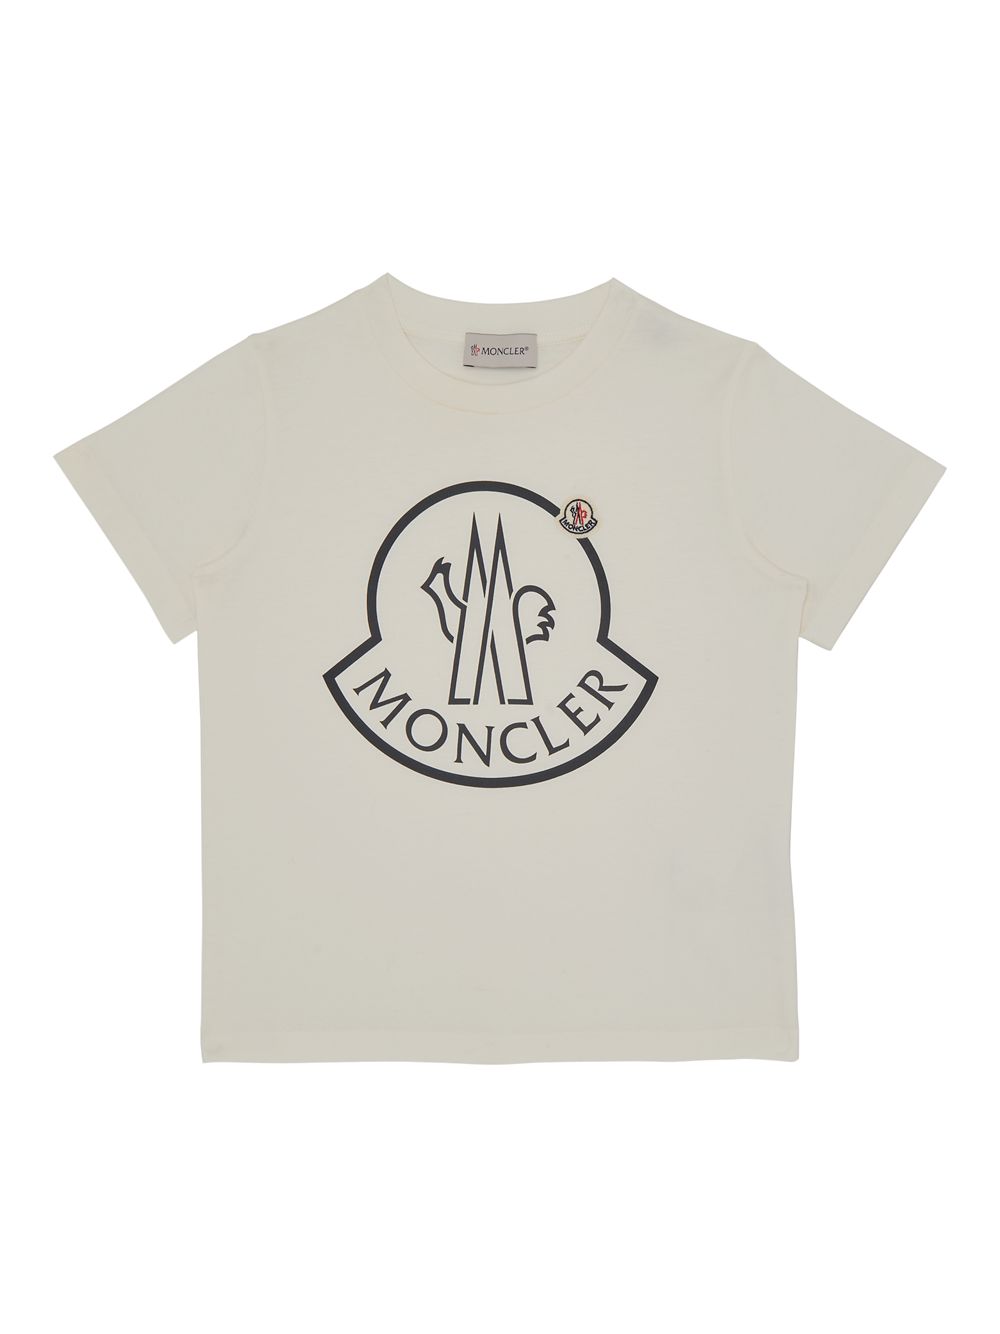 Хлопковая футболка с логотипом для маленьких девочек и девочек Moncler, белый